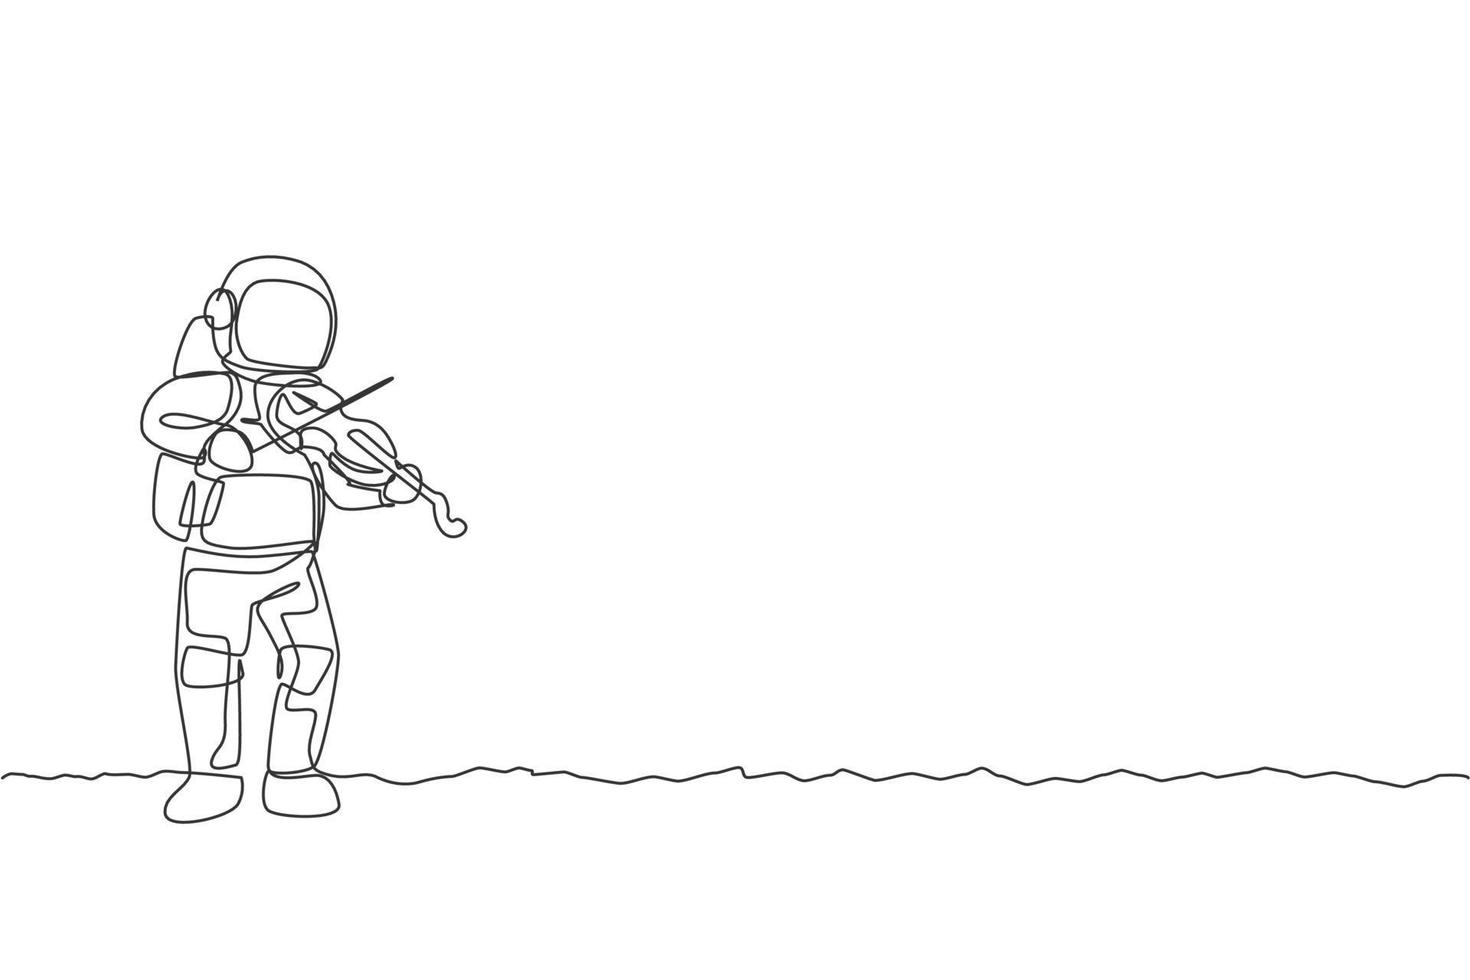 un dibujo de una sola línea de astronauta tocando el violín instrumento musical en la ilustración gráfica de vector de espacio profundo. cartel de concierto de música con concepto de astronauta espacial. diseño moderno de dibujo de línea continua